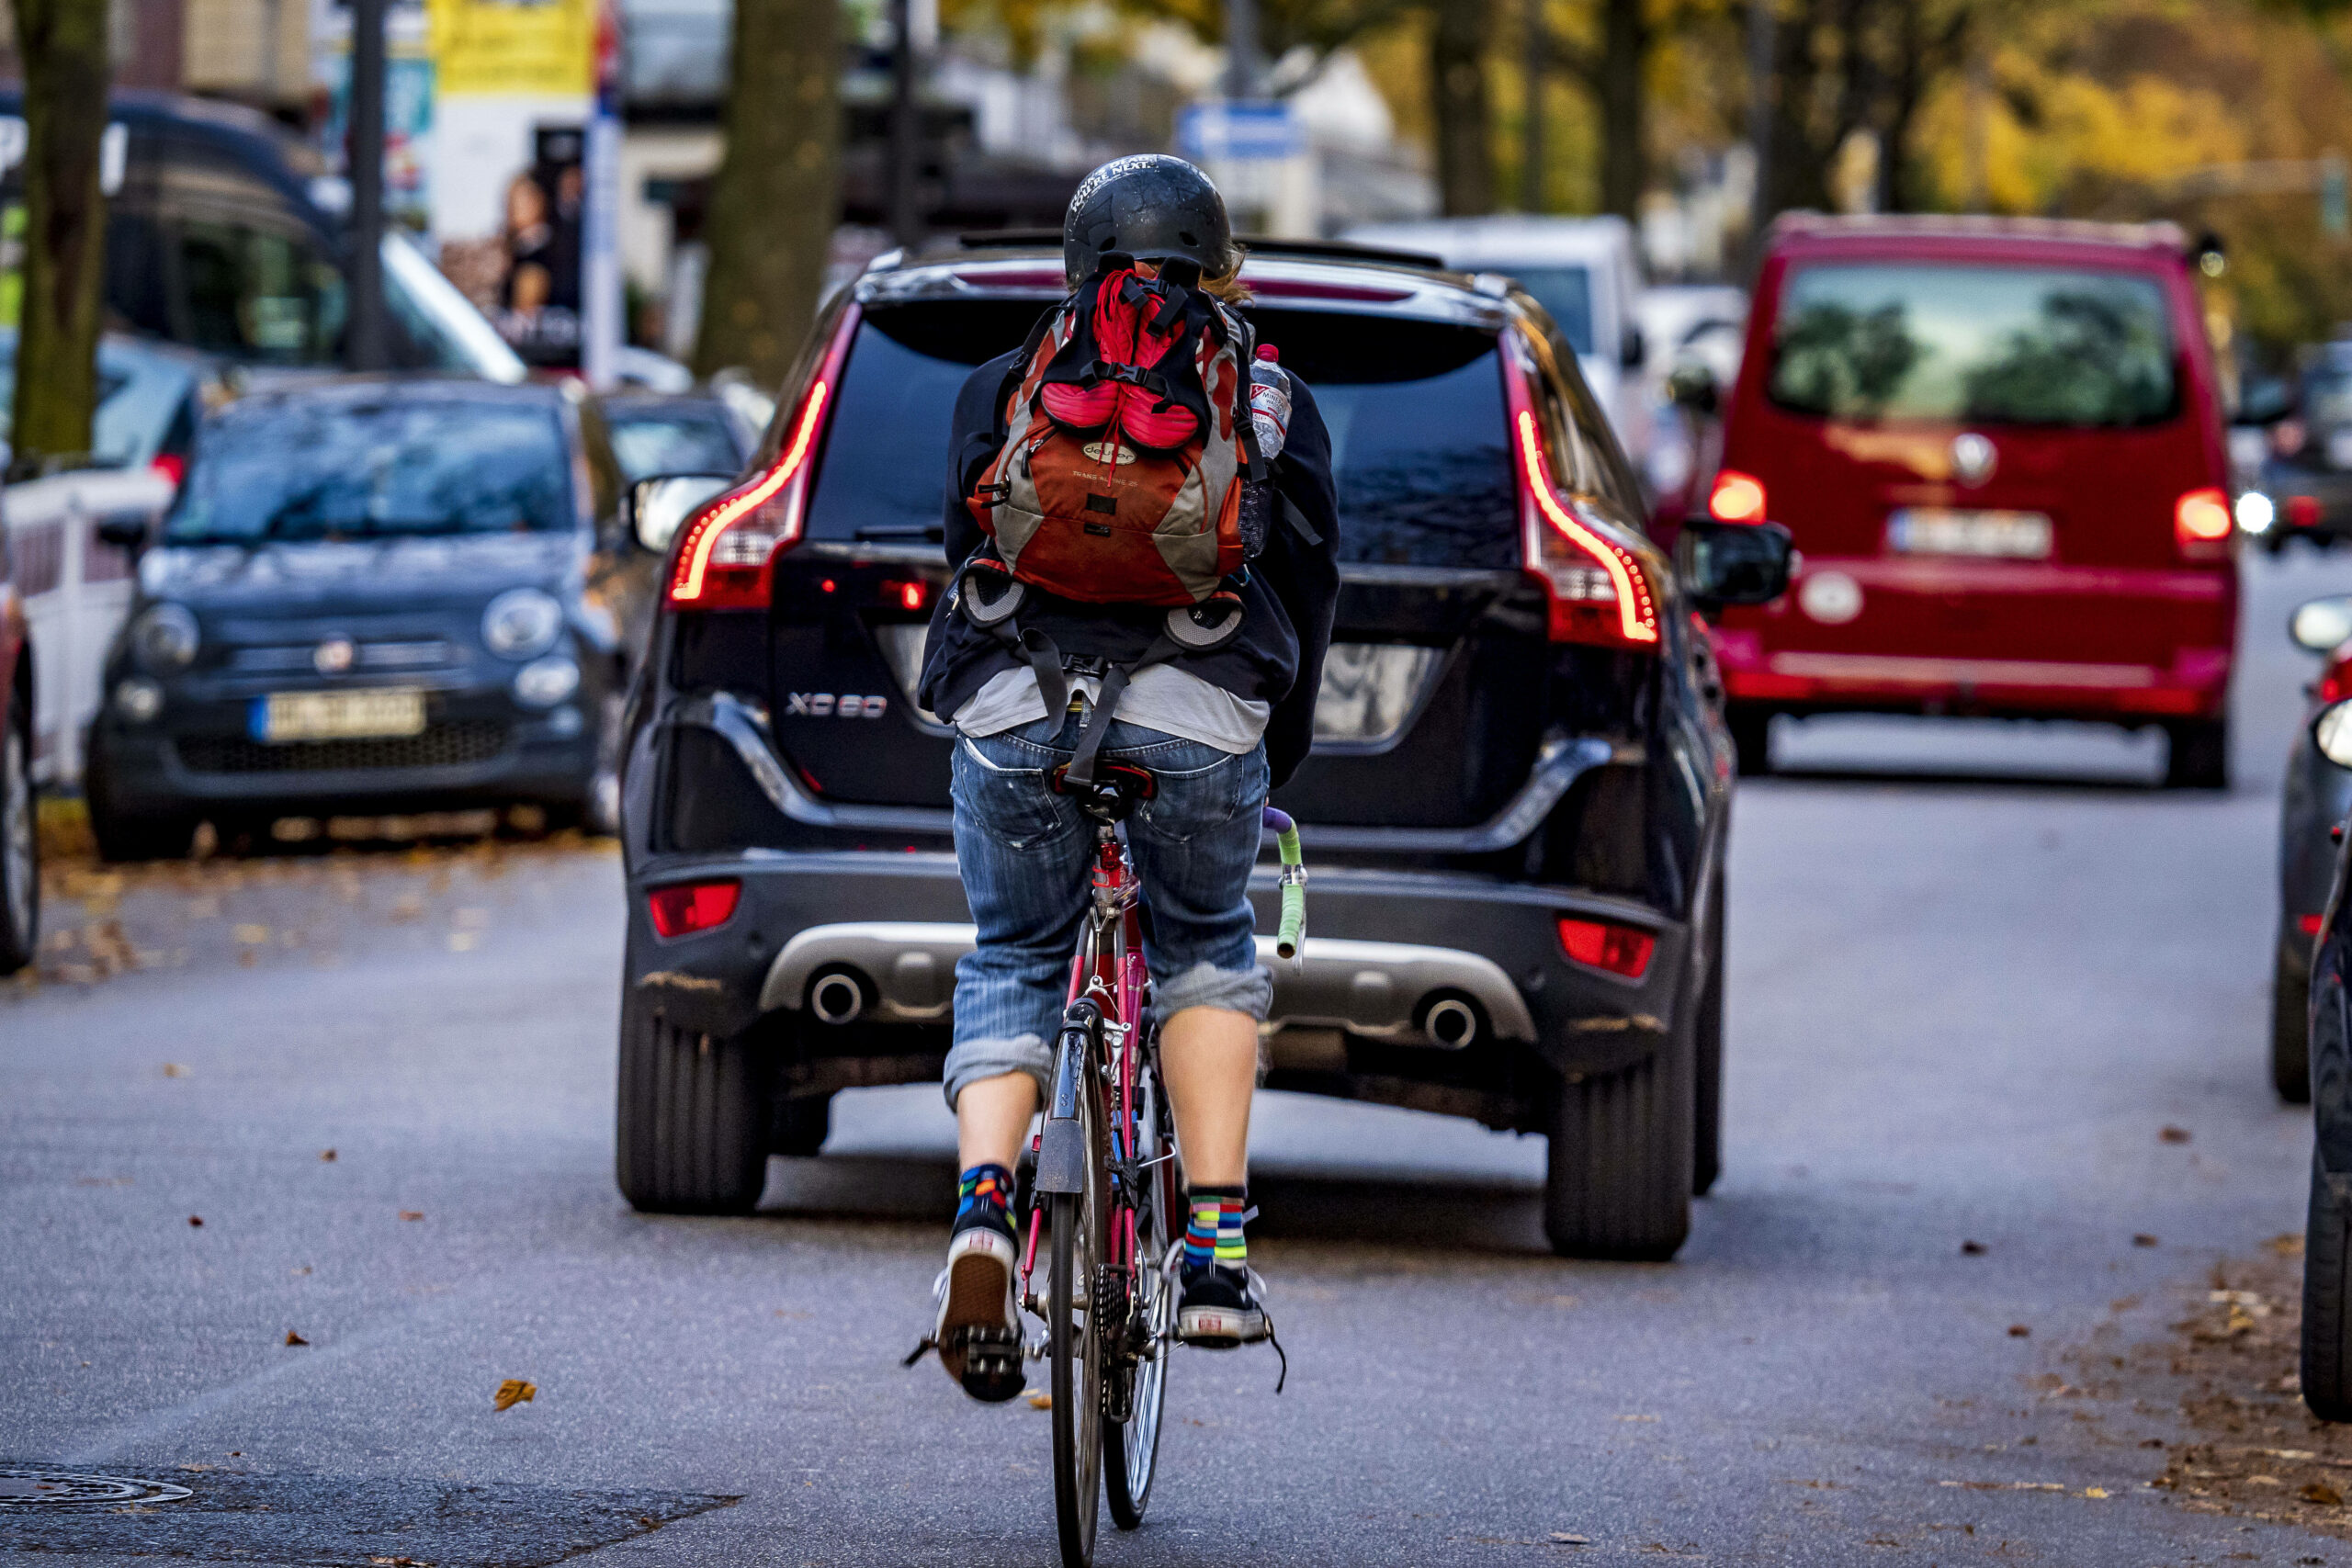 Autofahrer müssen anderthalb Meter Abstand halten, wenn sie ein Fahrrad überholen. Viele halten sich nicht daran (Symbolbild).